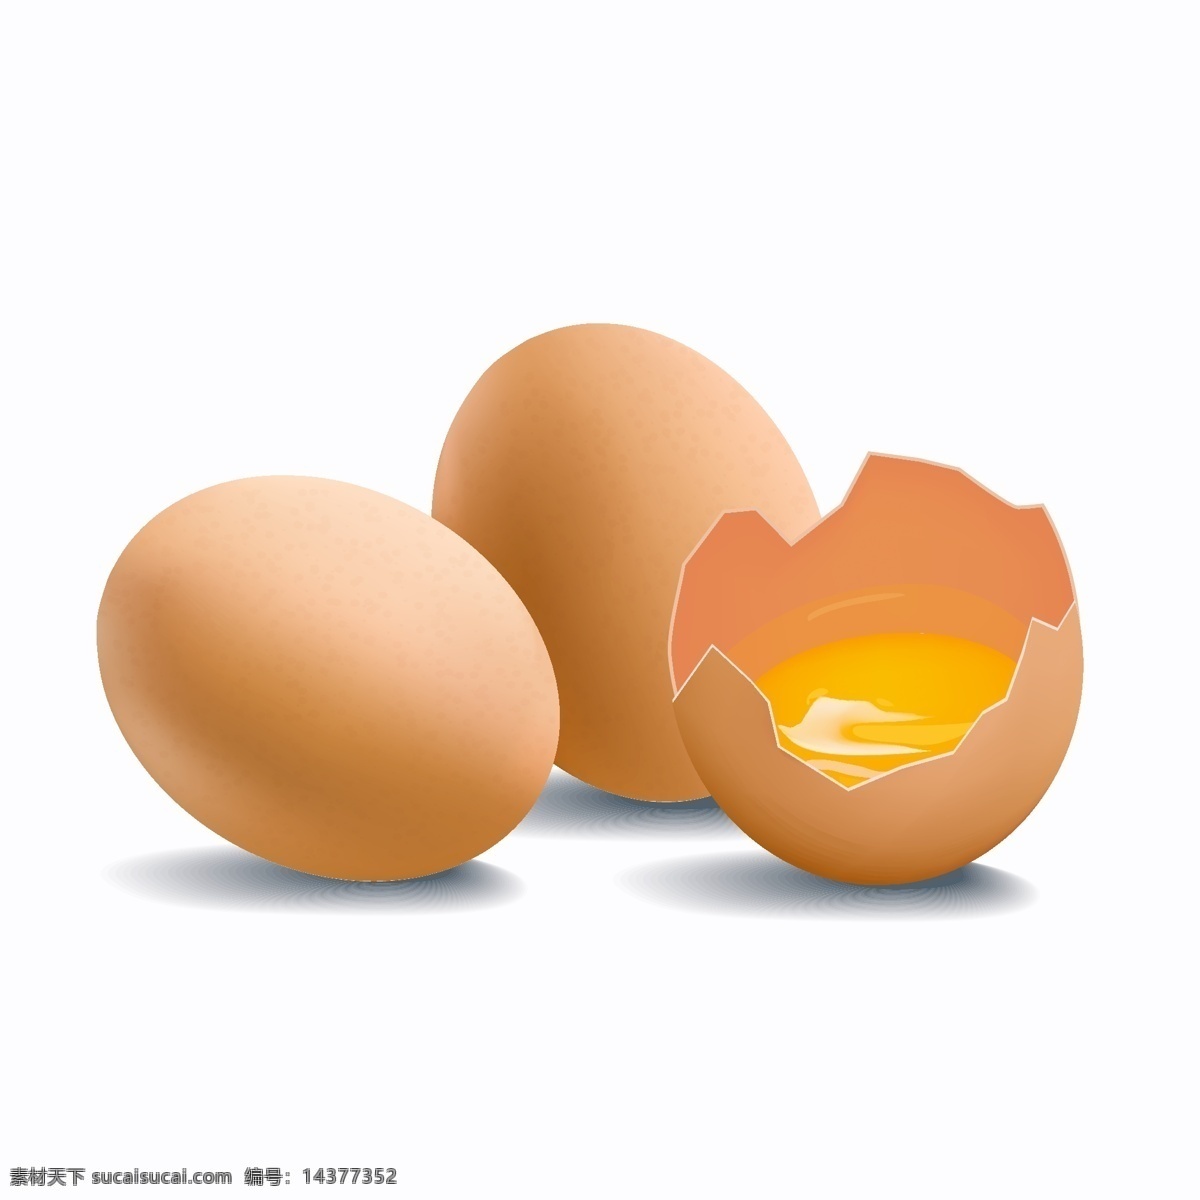 新鲜 鸡蛋 打碎 矢量 食物 蛋黄 食品 生态 土鸡蛋